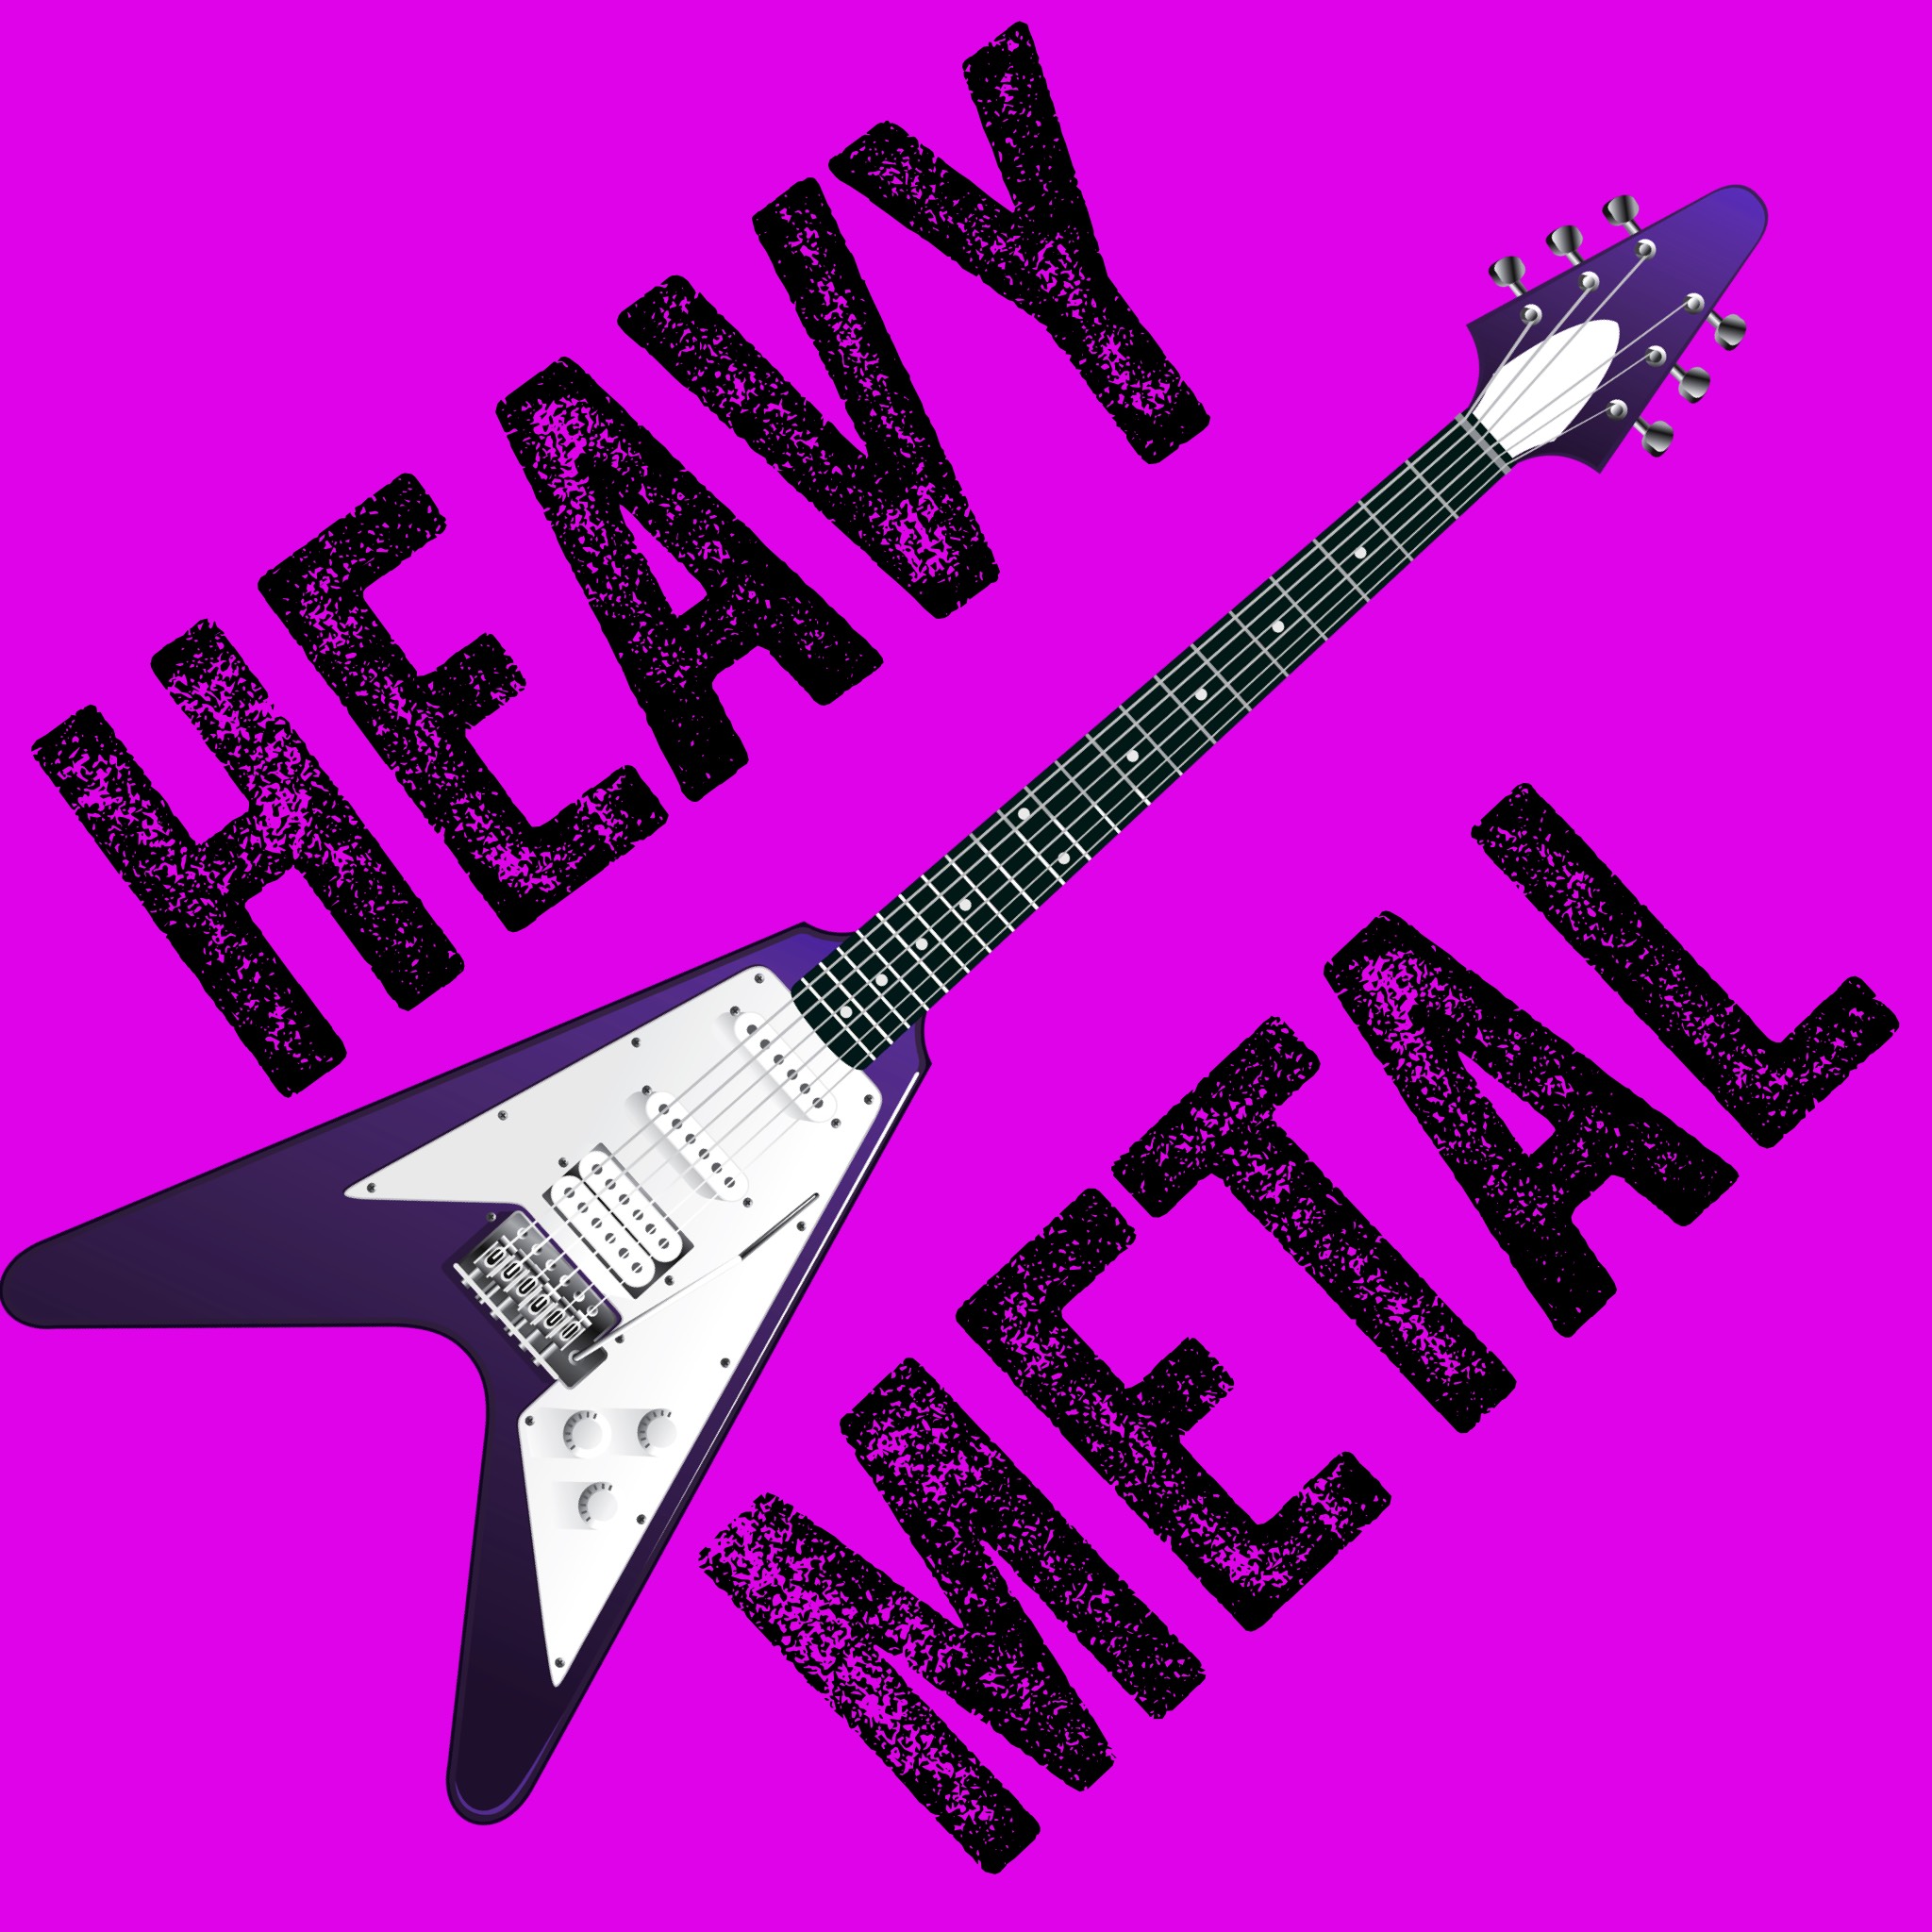 Art for Heavy Metal Noise by Heavy Metal Noise